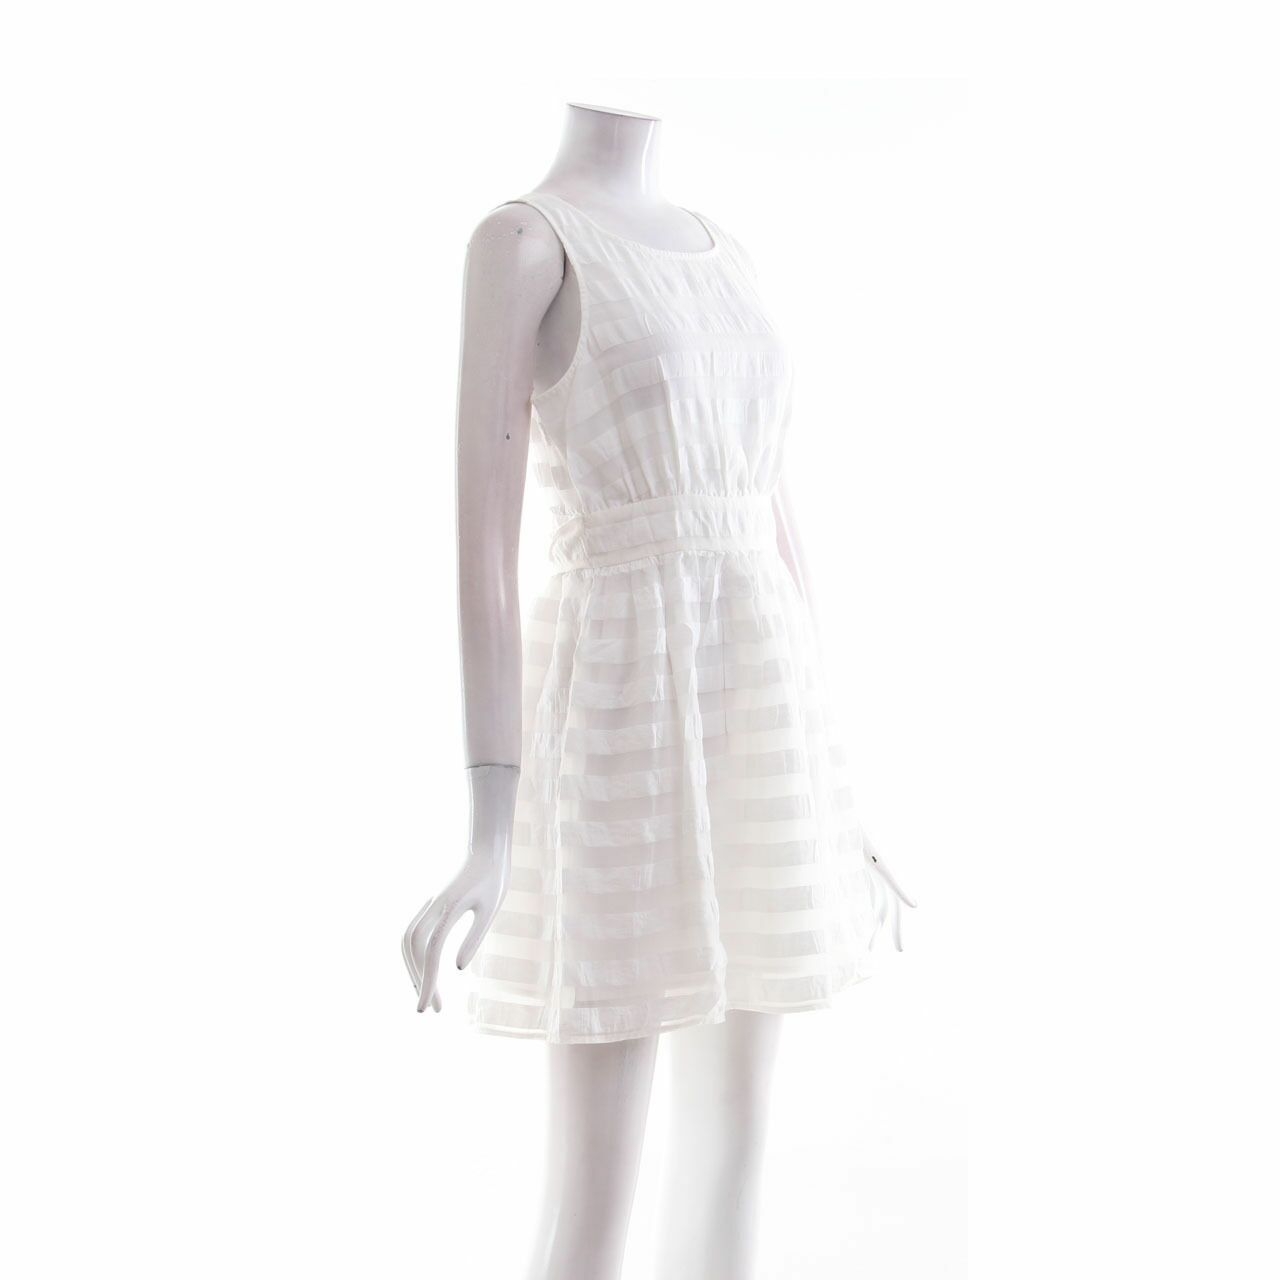 Forever 21 White Mini Dress